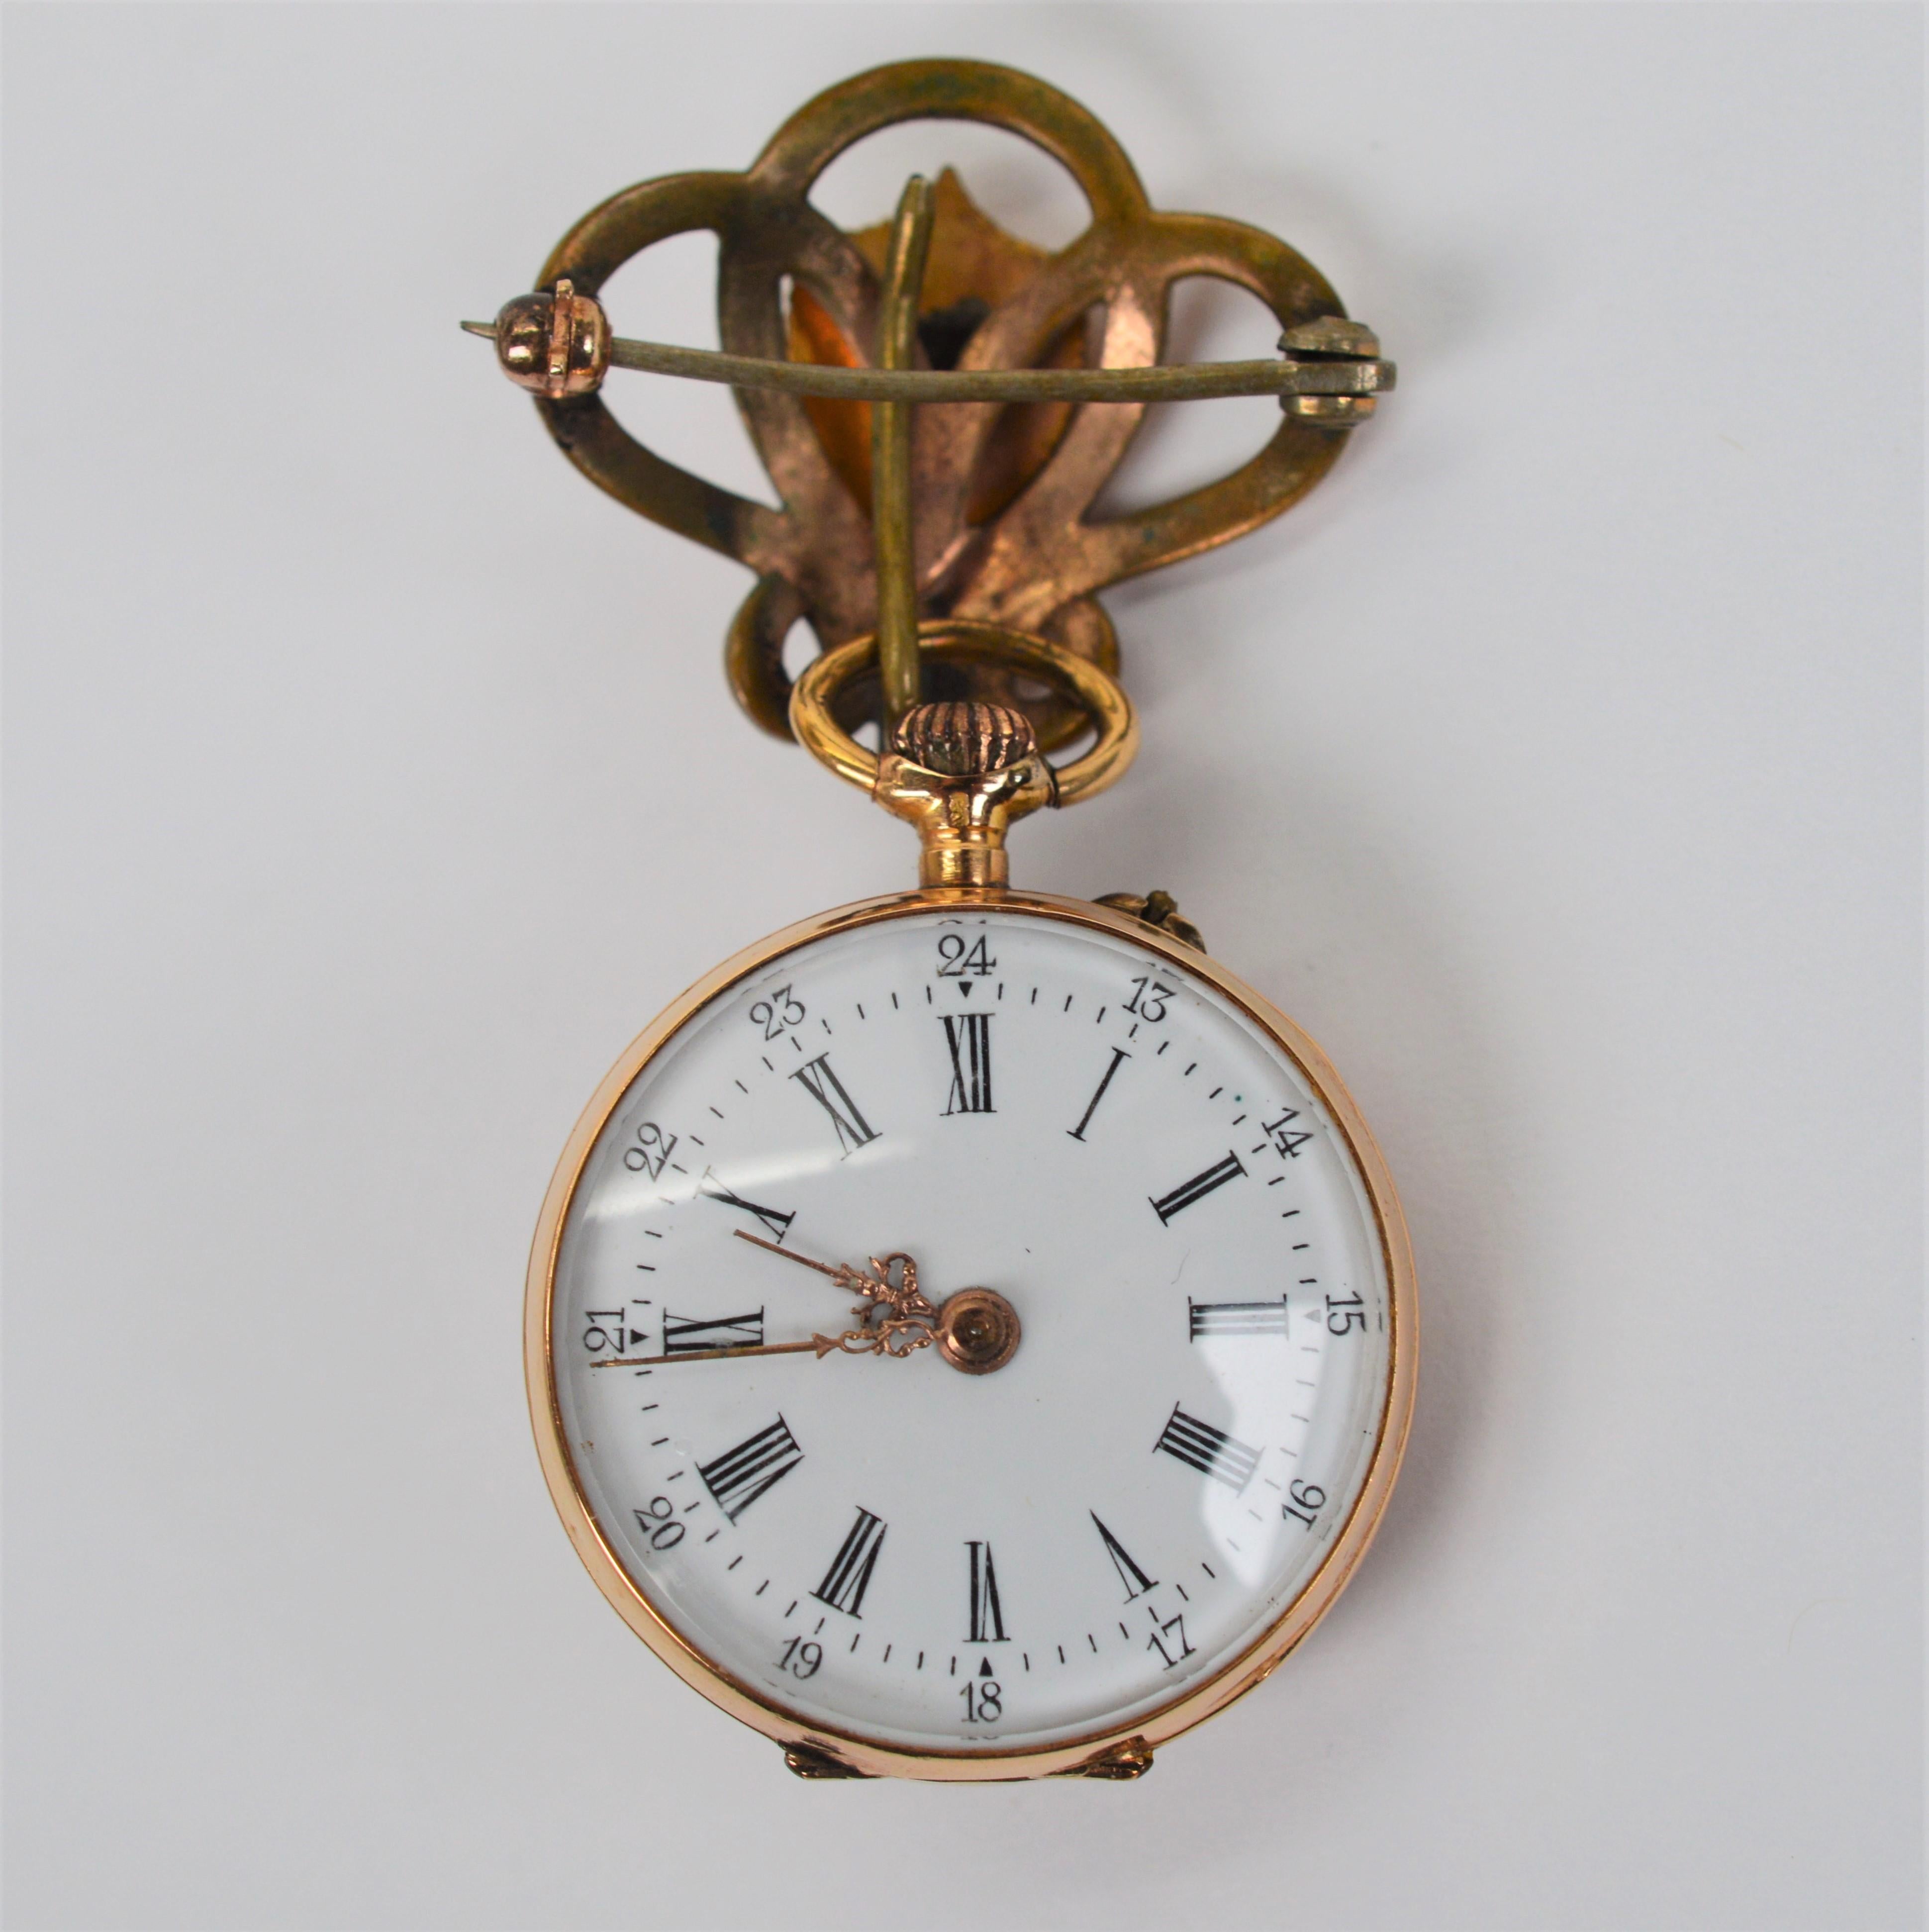 Très à la mode au début du 19e siècle, cette belle épingle à montre est un exemple spectaculaire d'une belle pièce d'horlogerie féminine de l'époque. Réalisé en or jaune 14 carats, le boîtier est rehaussé d'une pierre centrale en forme de grenat et